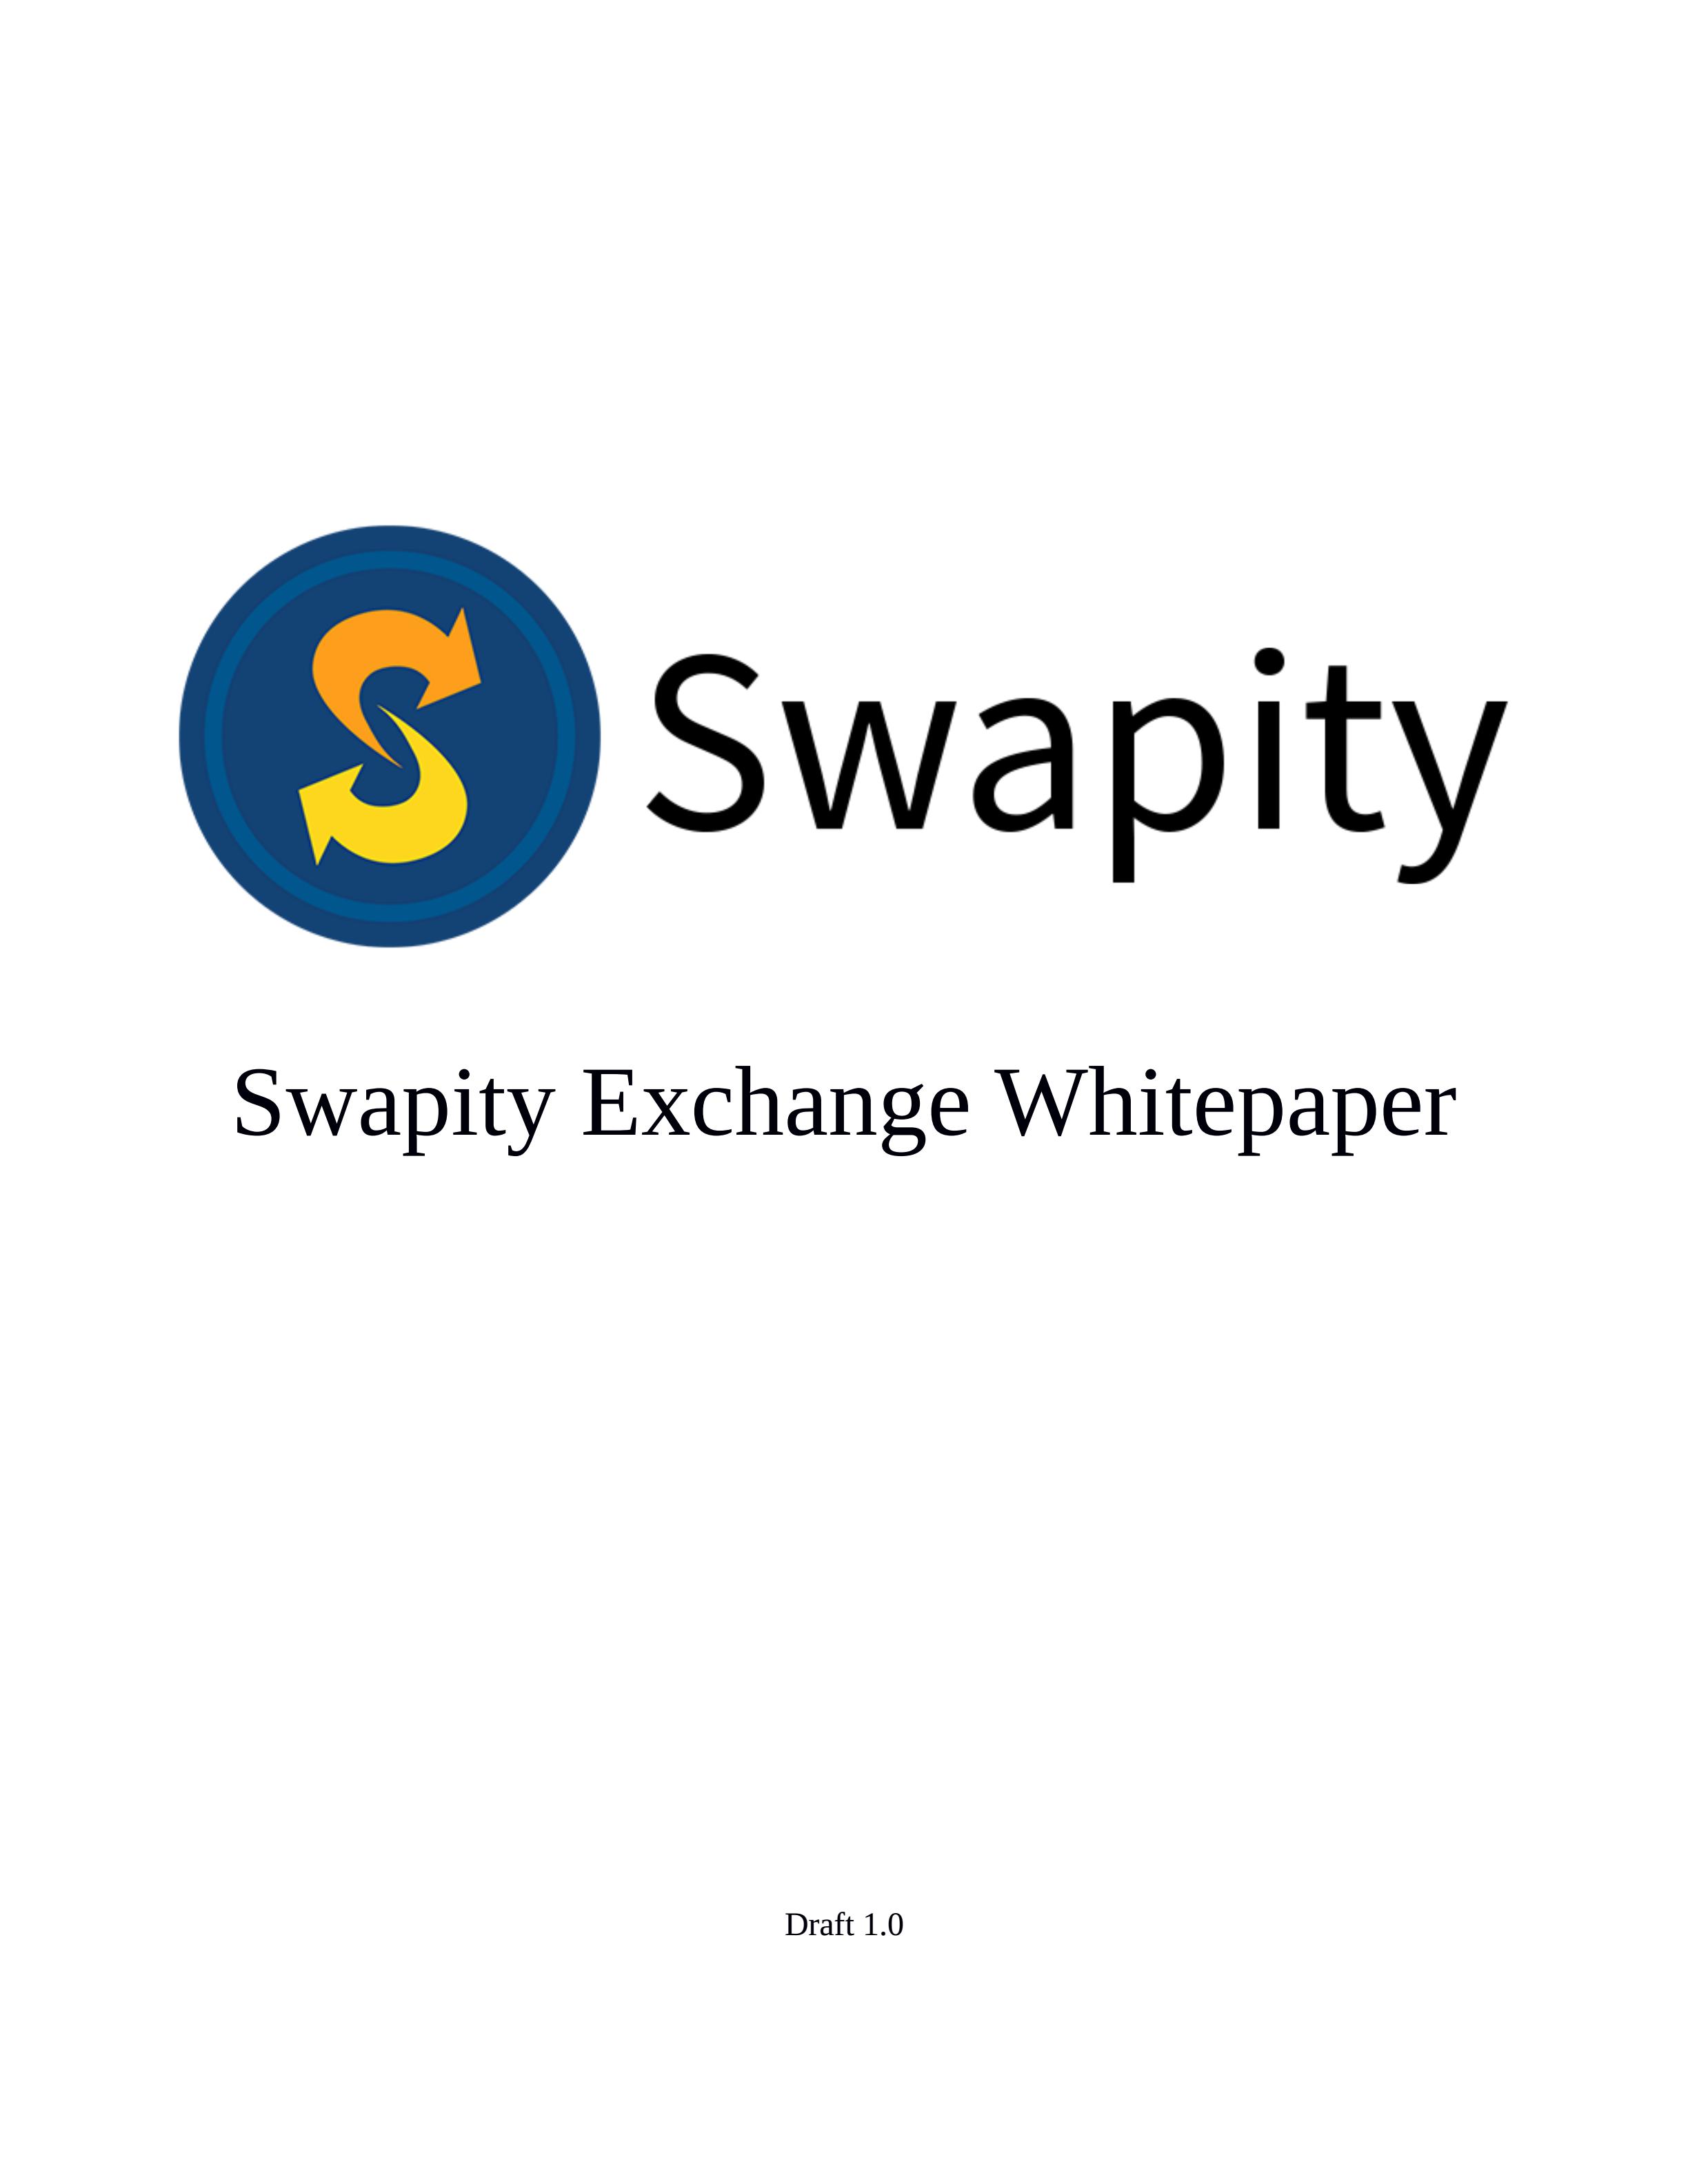 SWP_Swapity_Whitepaper_00.jpg